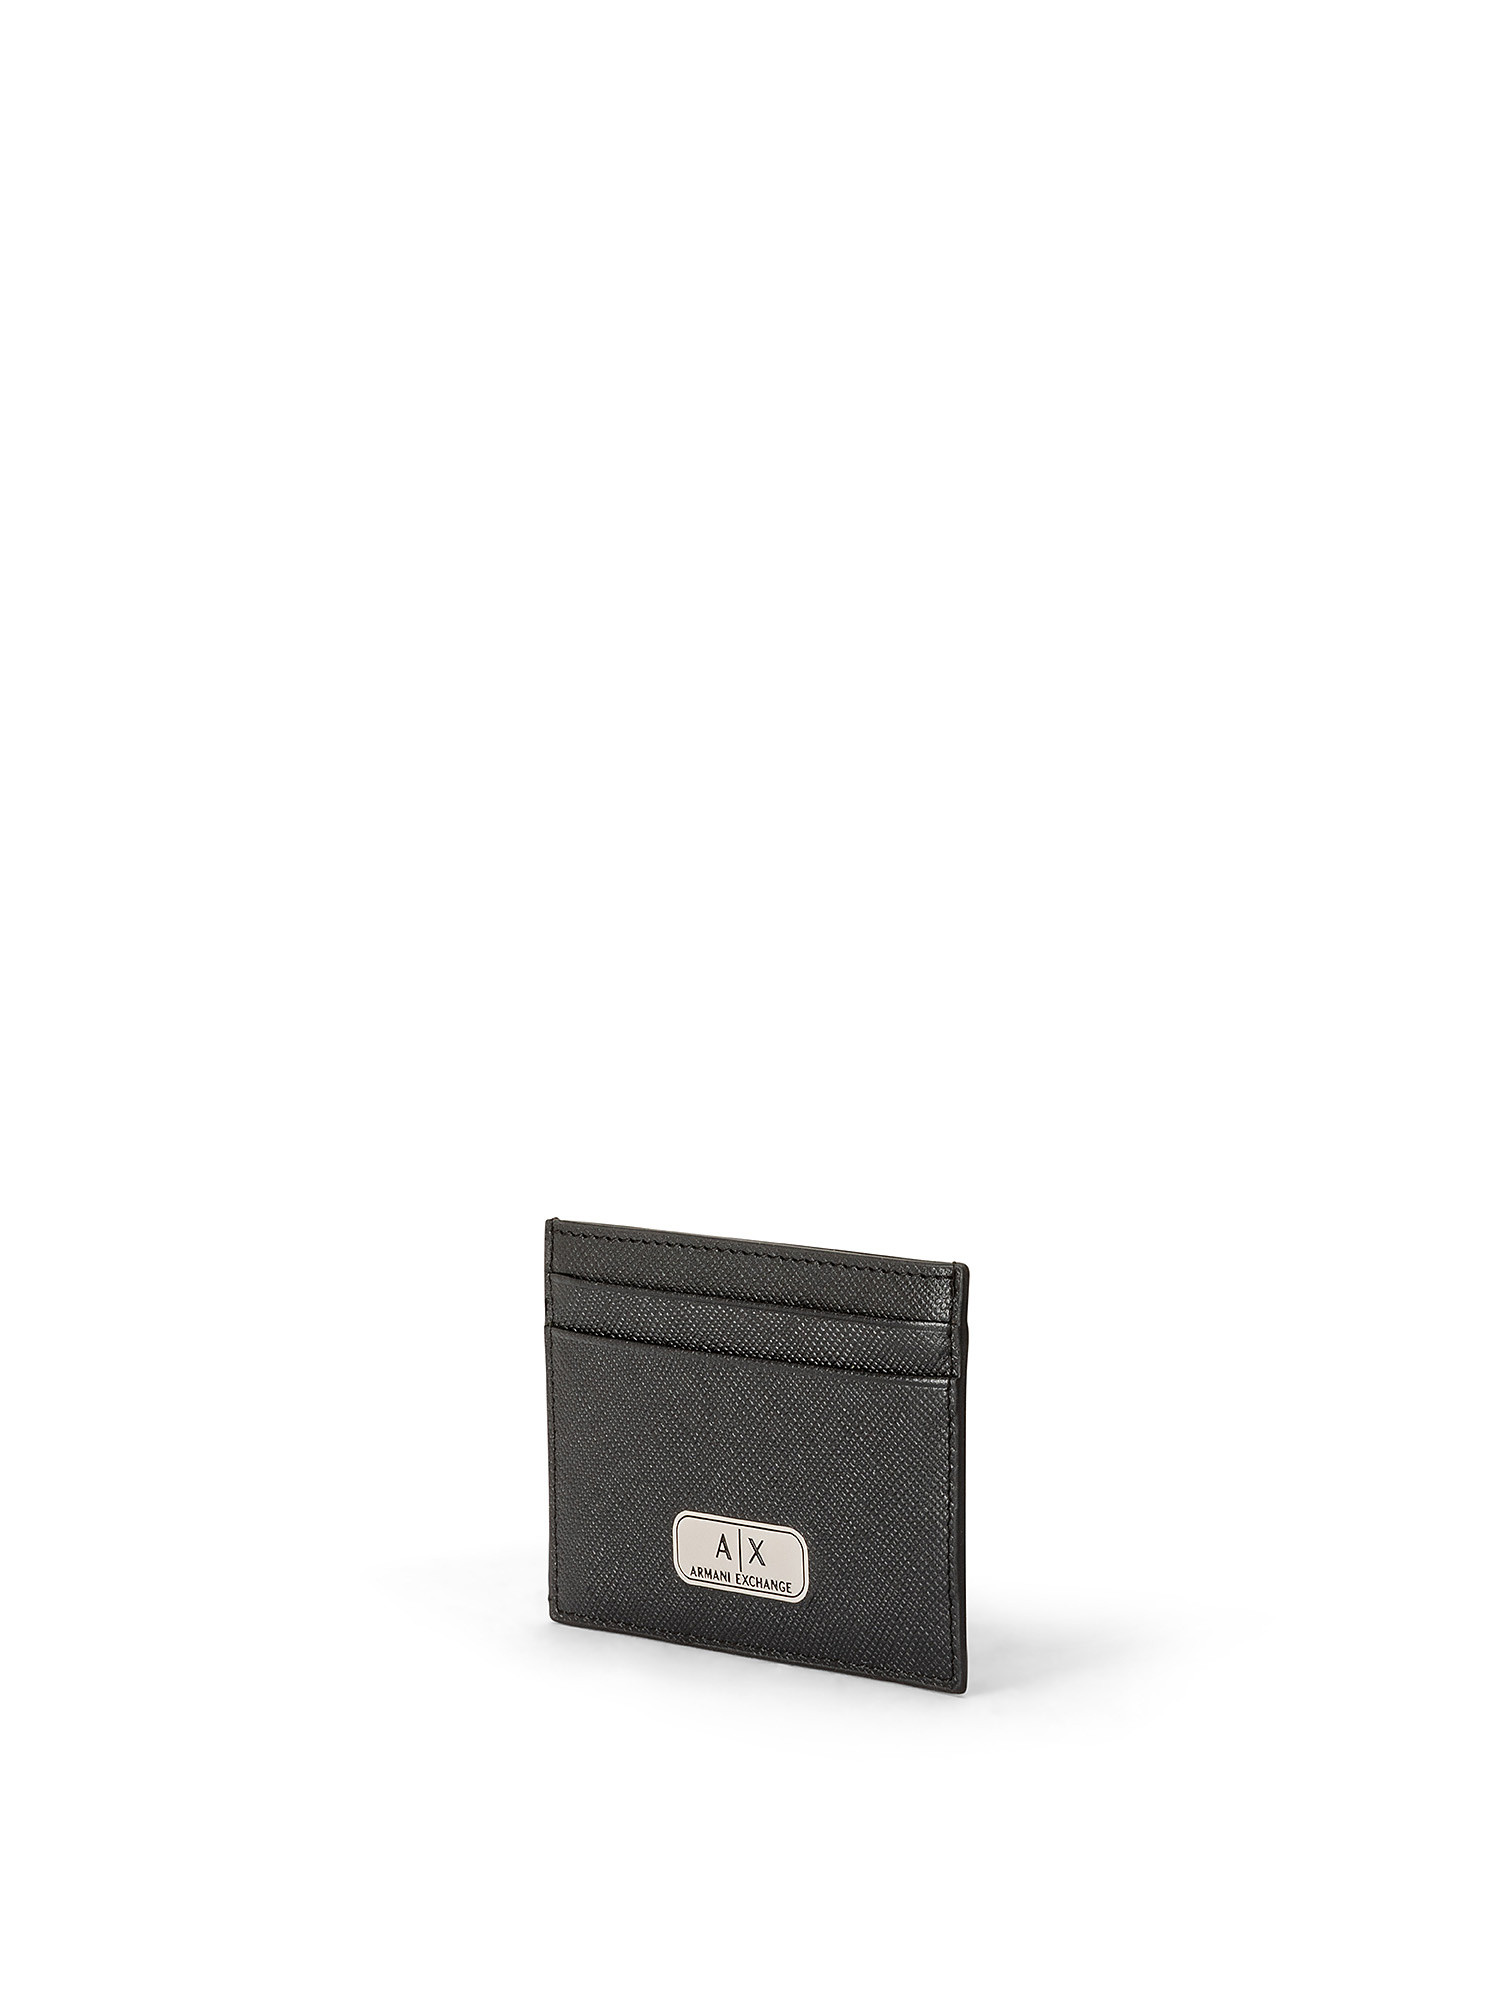 Armani Exchange - Card holder with logo, Black, large image number 1